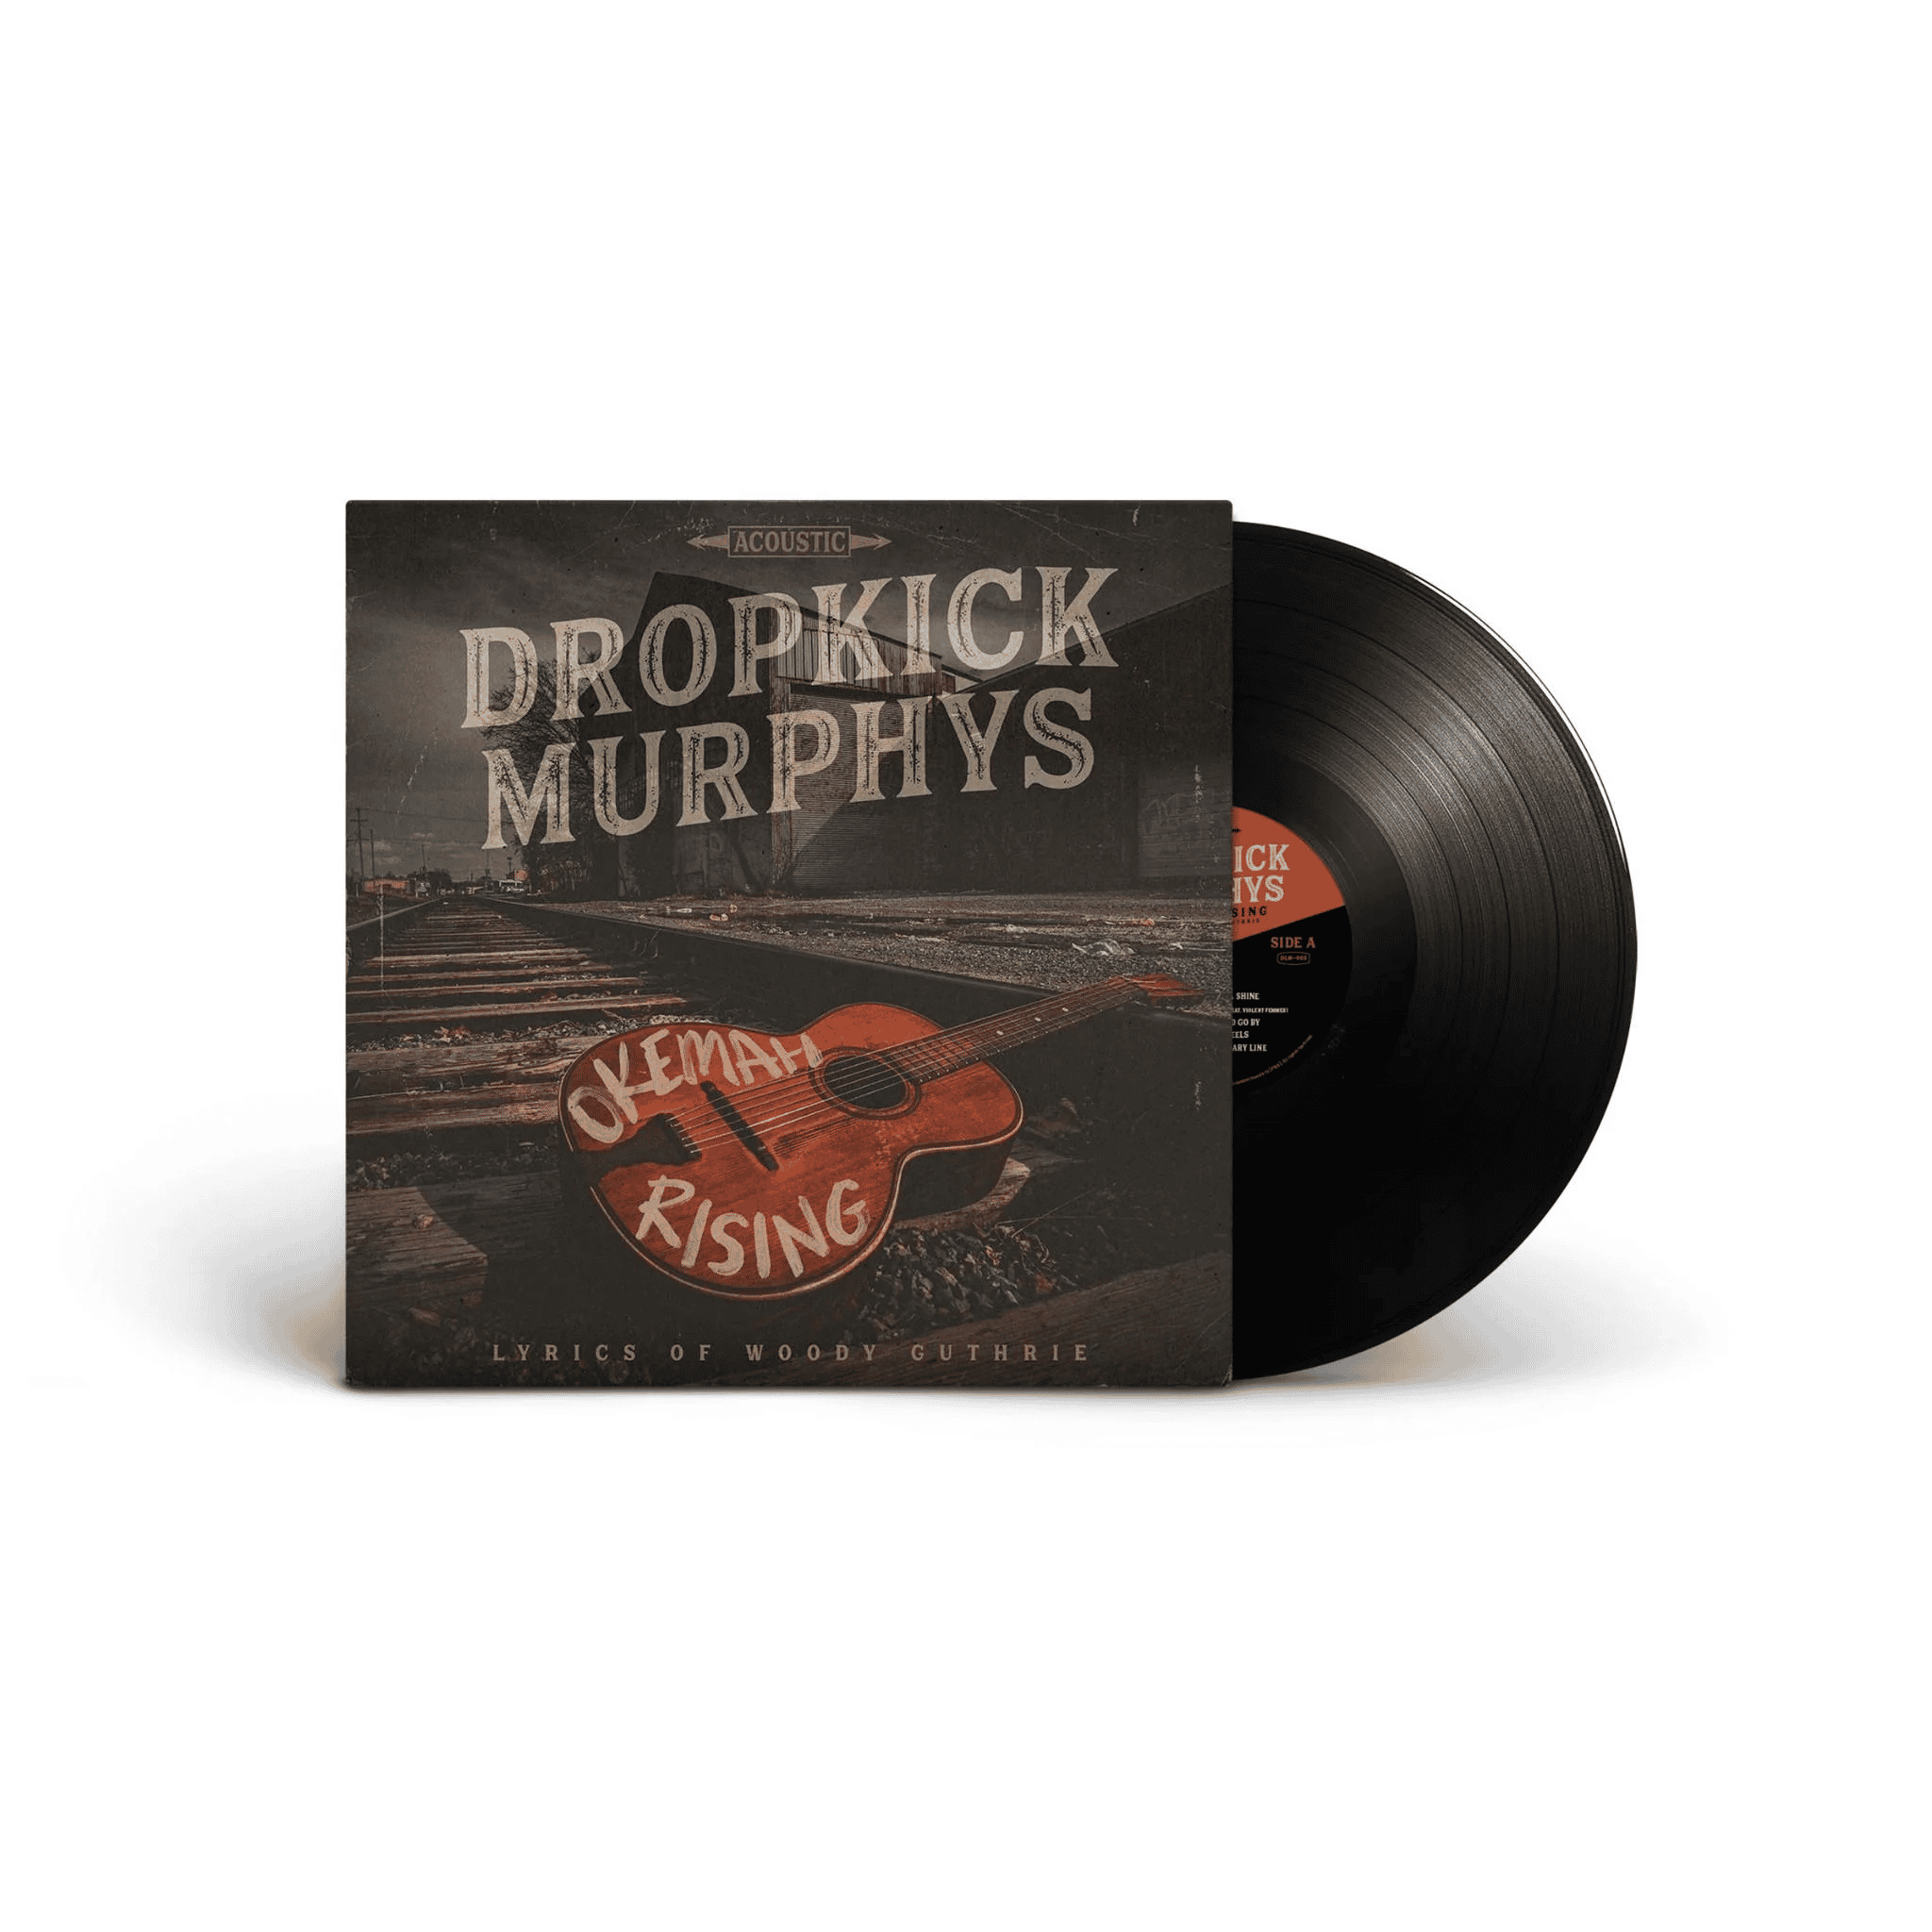 DROPKICK MURPHYS - Okemah Rising Vinyl - JWrayRecords